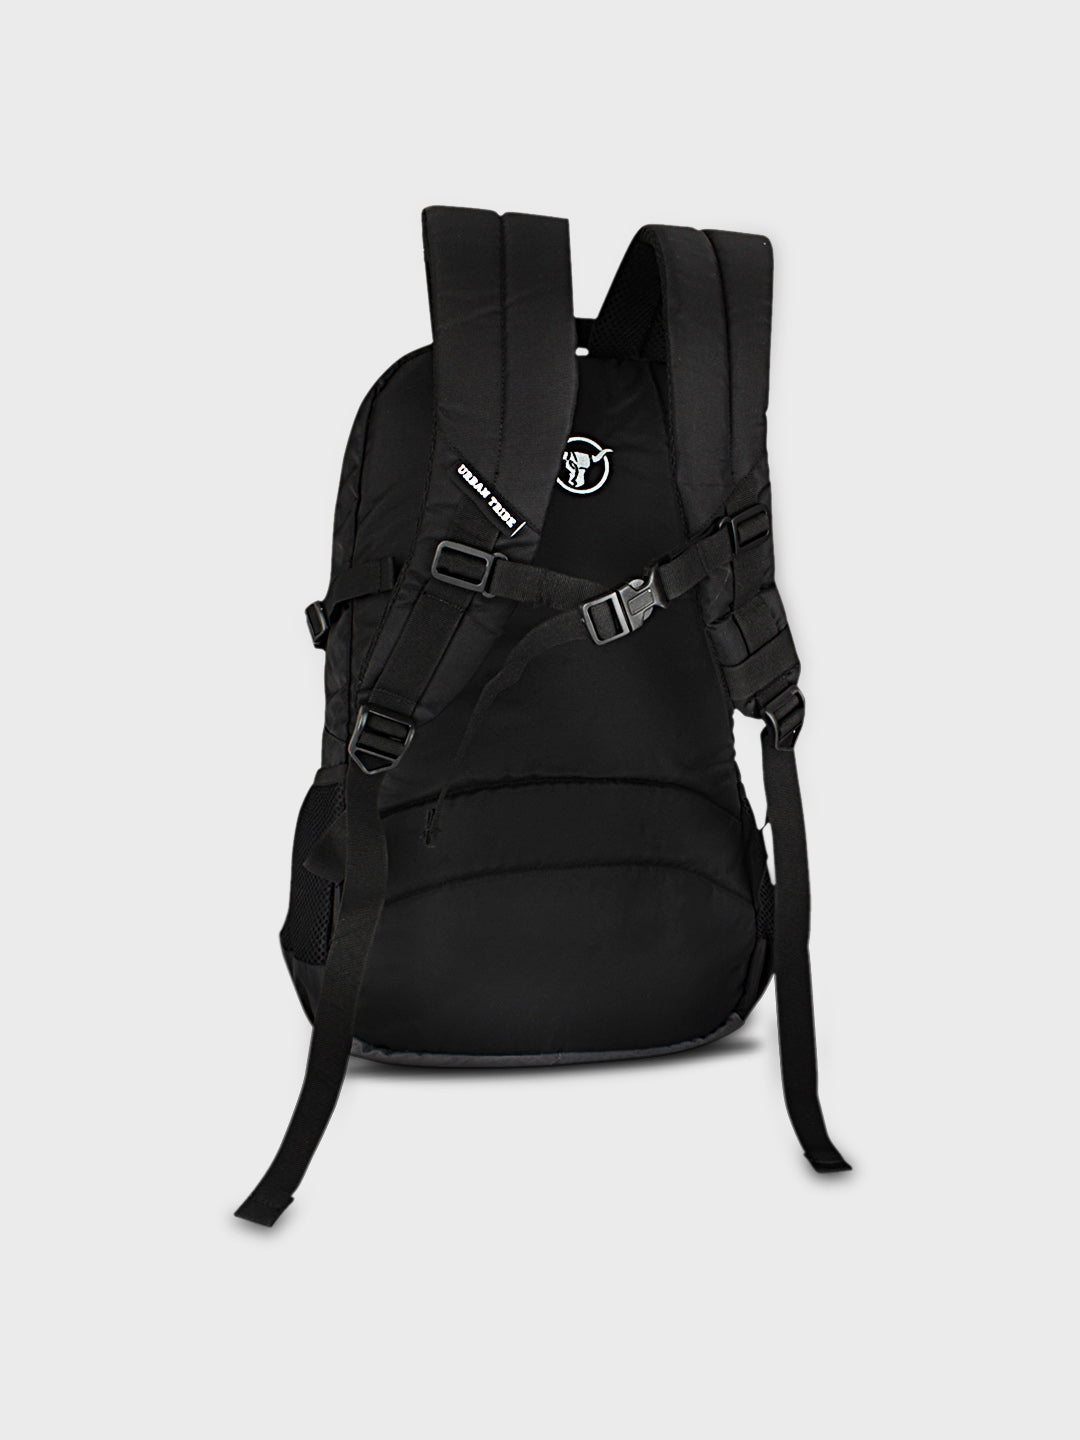 Battle Tank (Black/Grey) : Laptop Backpack, Backpack for Men, Casual ...